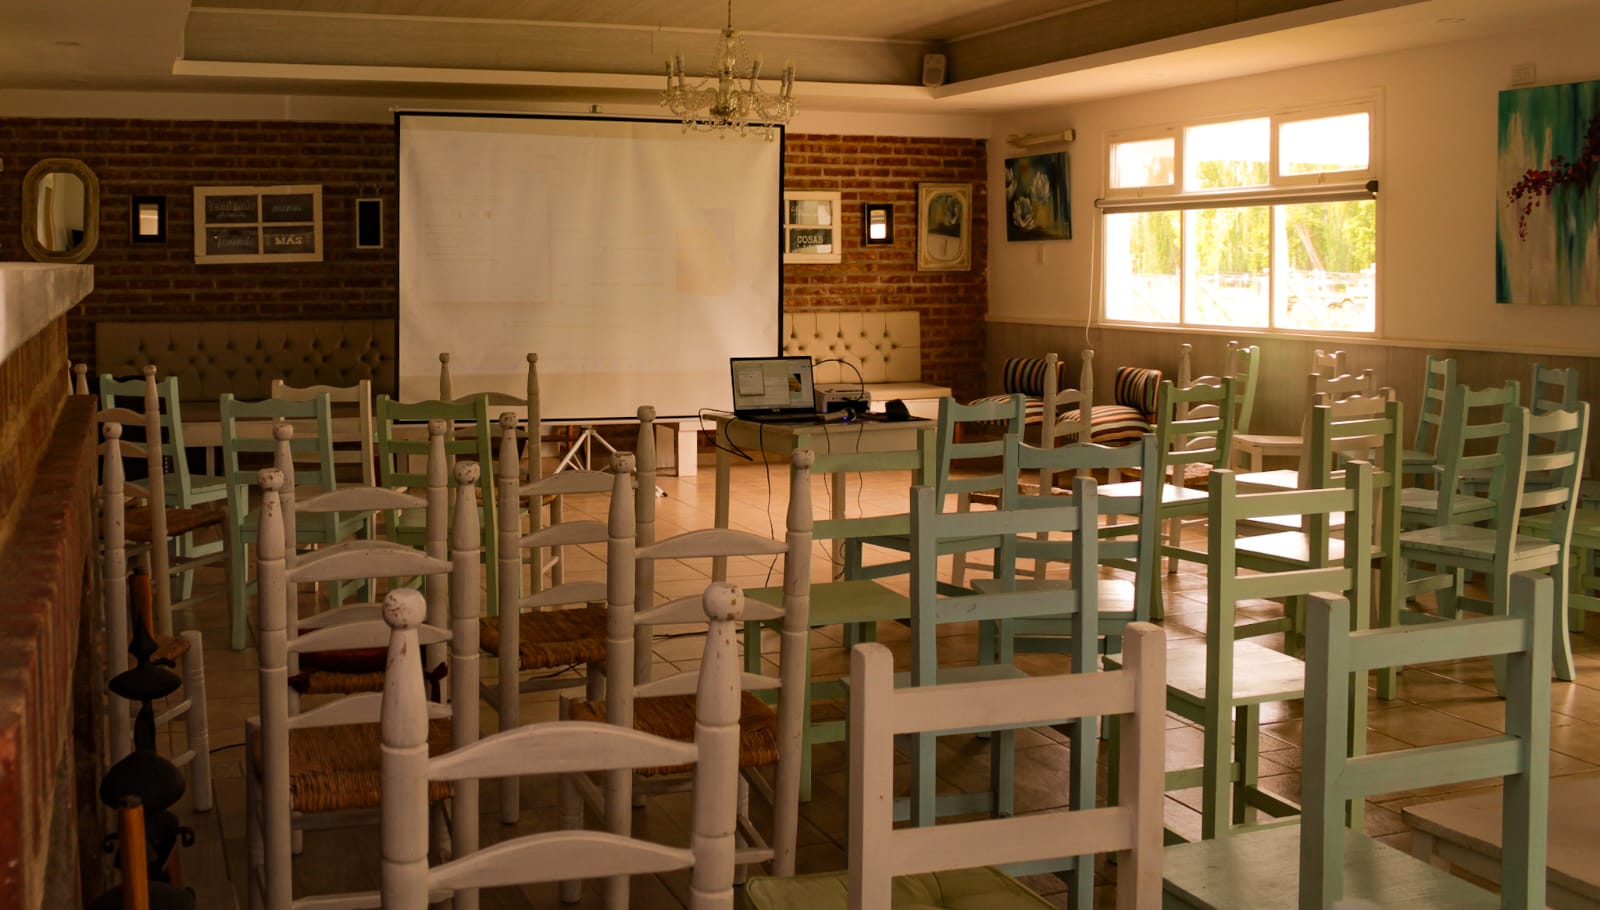 Salon organizado para una presentacion con sillas acomodads y proyector